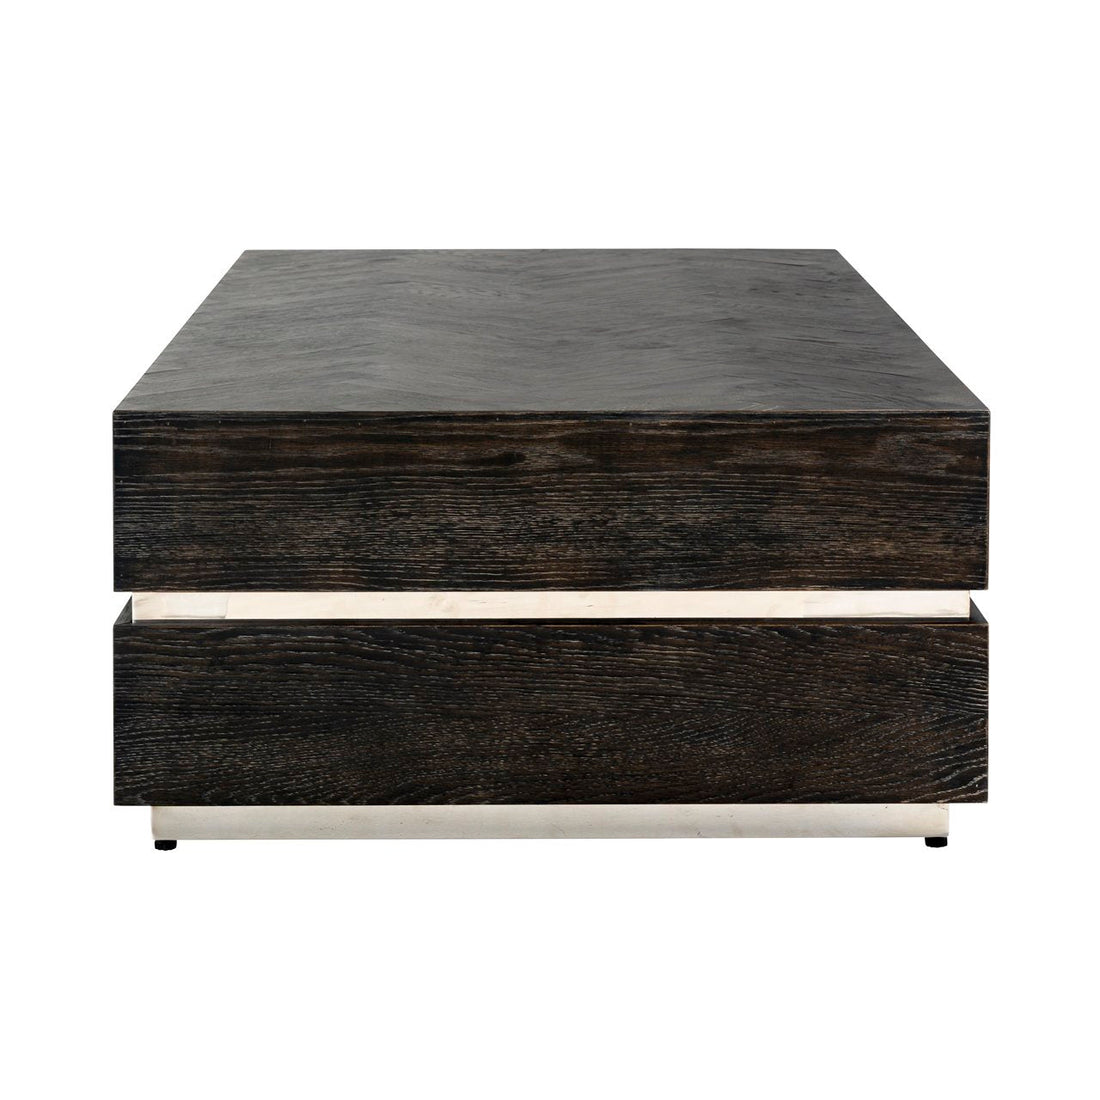 Blackbone collectie salontafel met strak design en duurzaam gebouwd.